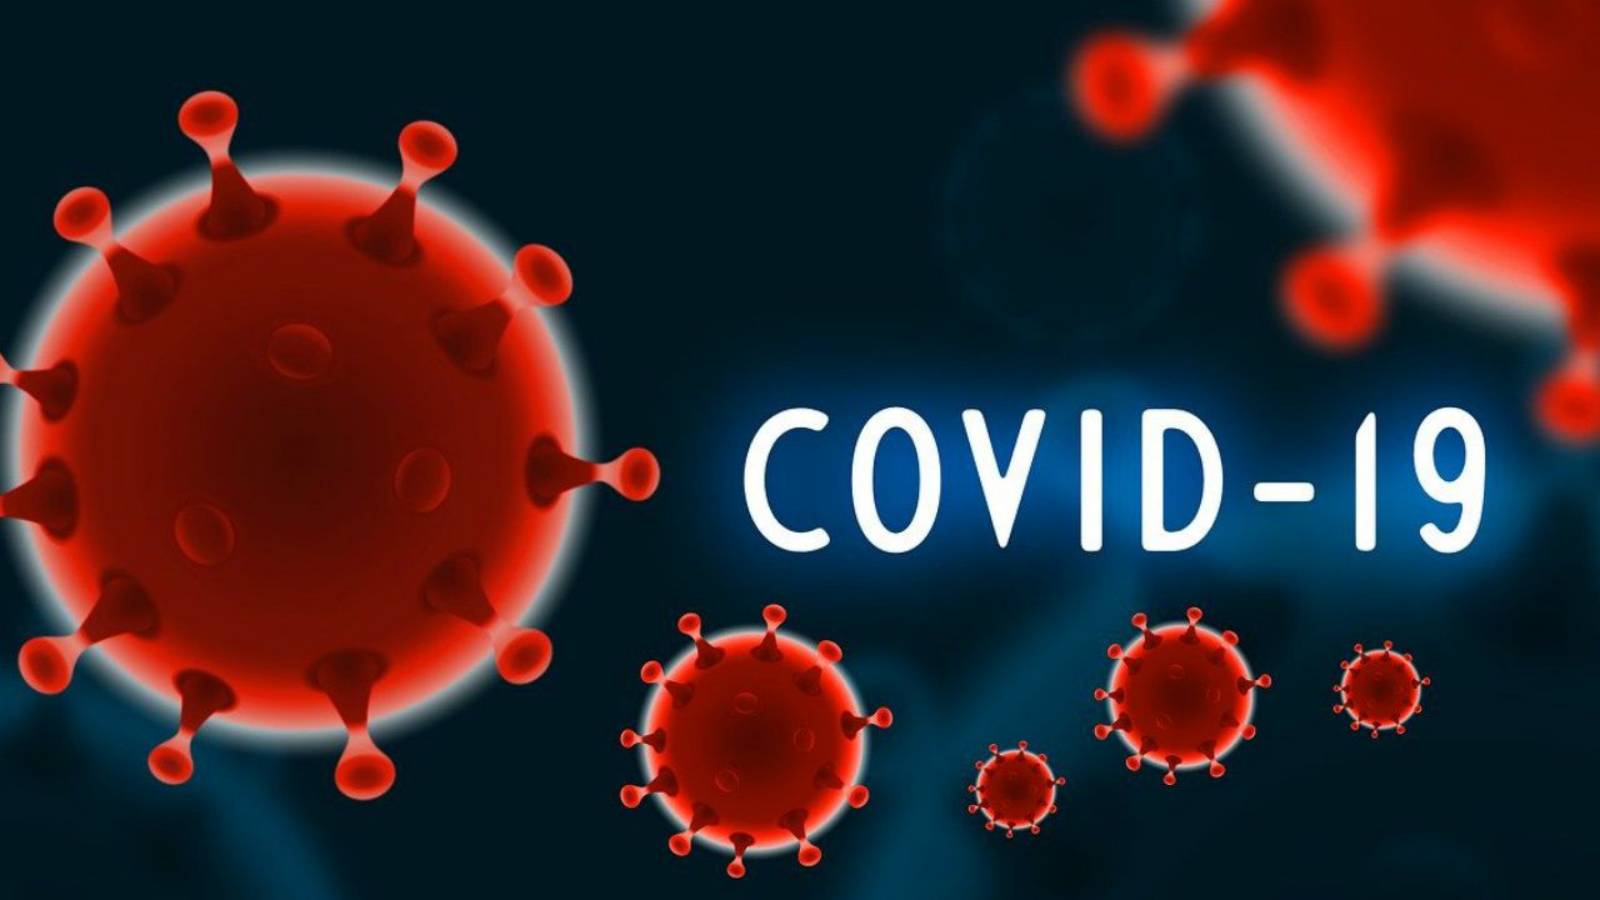 Vaccin contre le COVID-19 en Roumanie : effets indésirables enregistrés